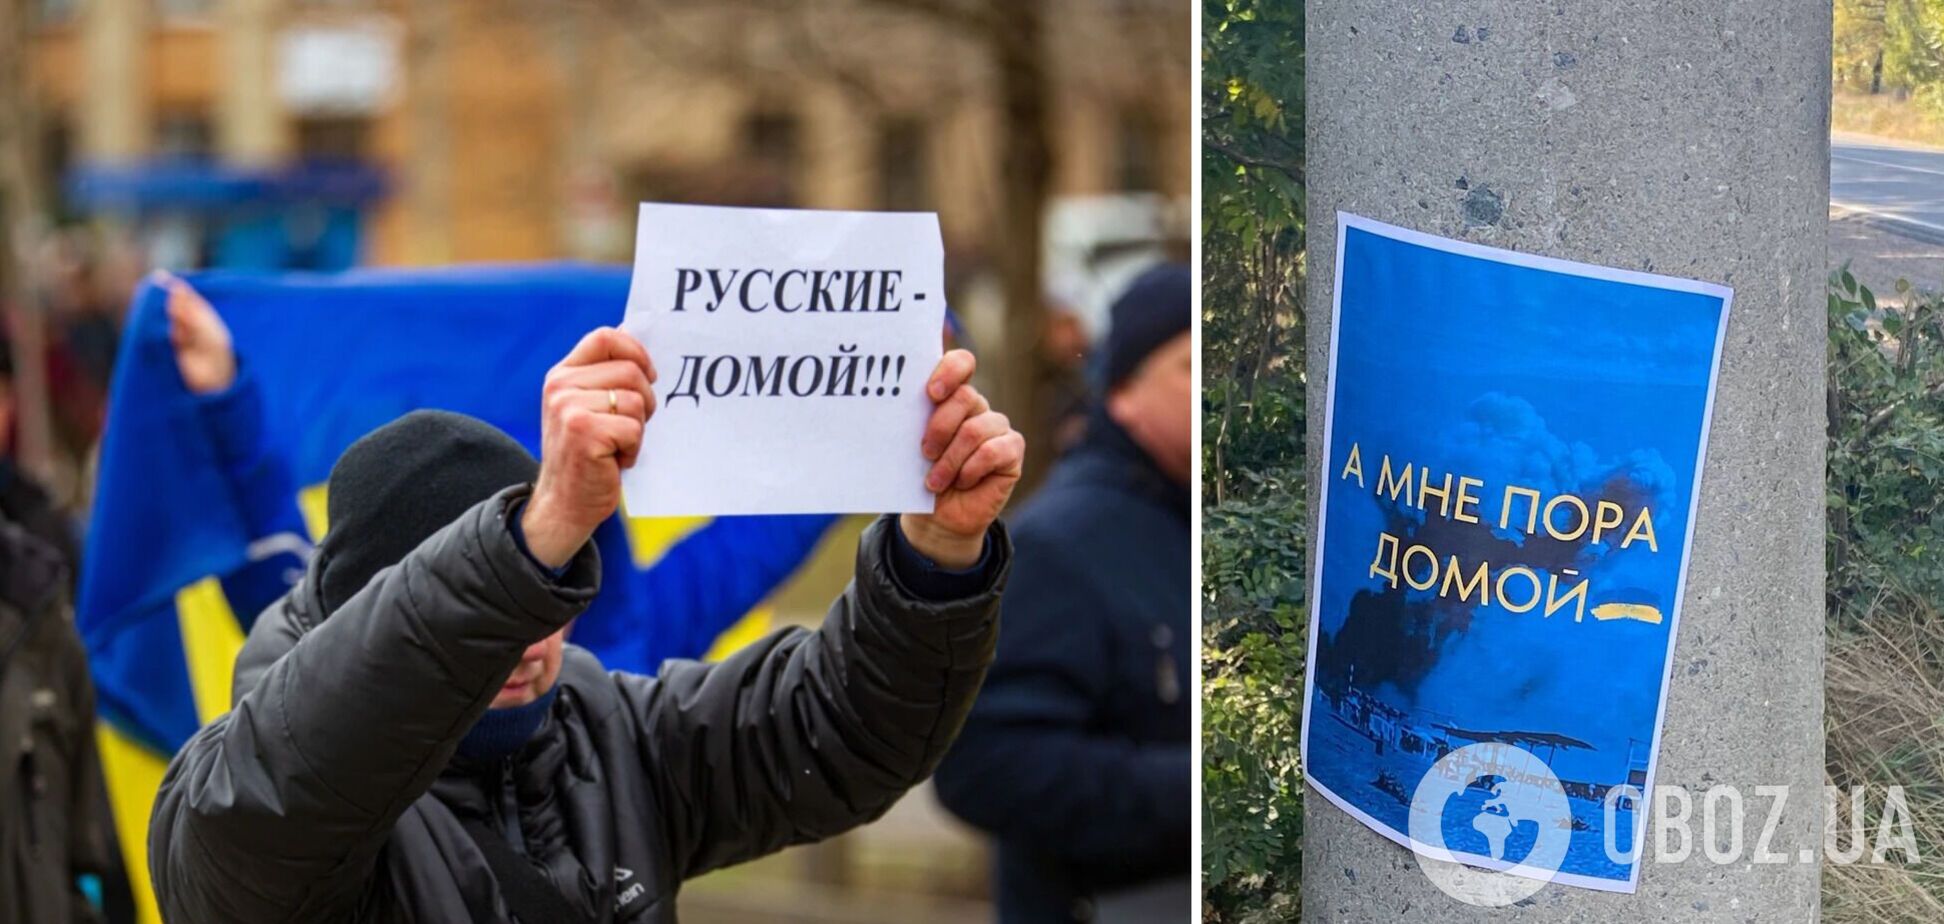 Сили спротиву на півдні України залишили 'послання' окупантам і спалили пропагандистську макулатуру. Фото і відео